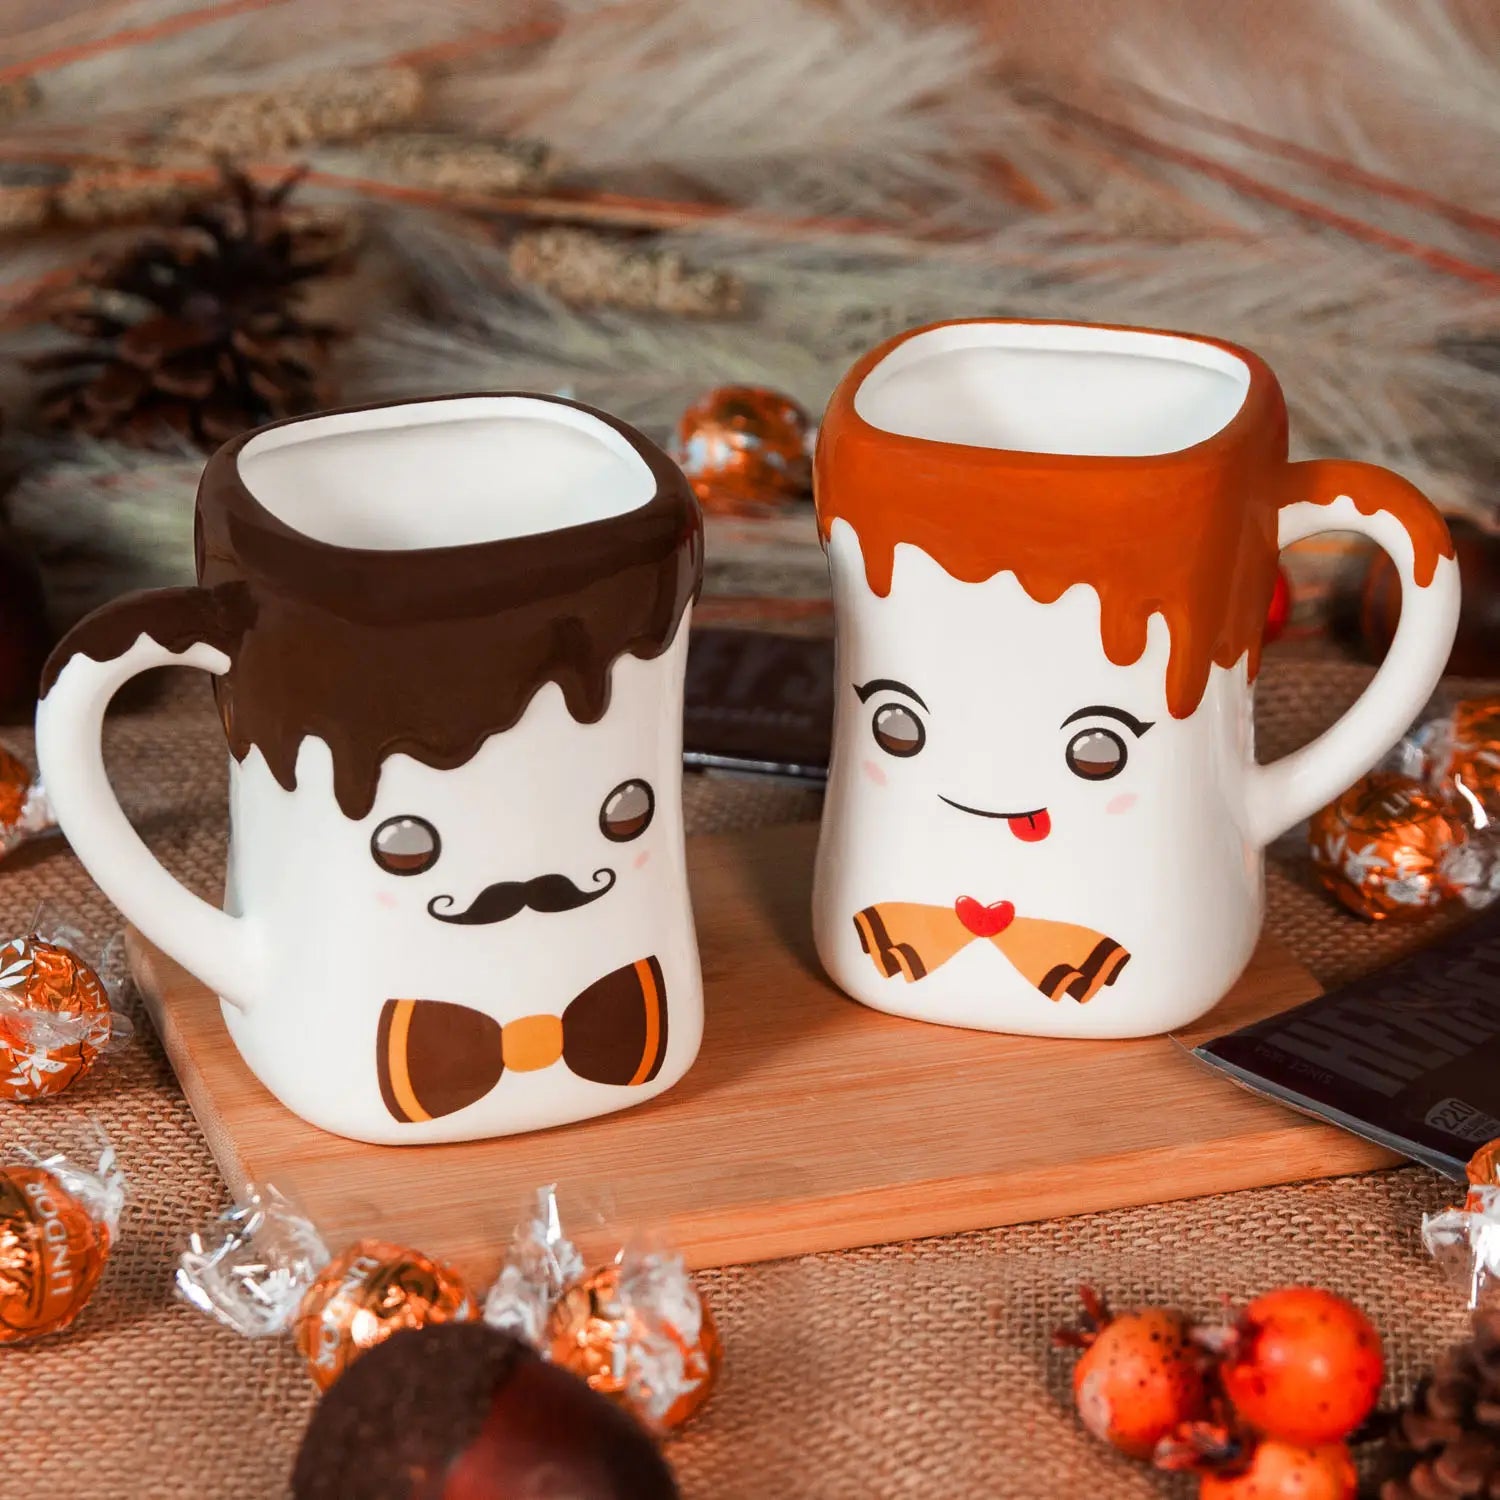 Marshmallow Shaped Hot Chocolate Mugs